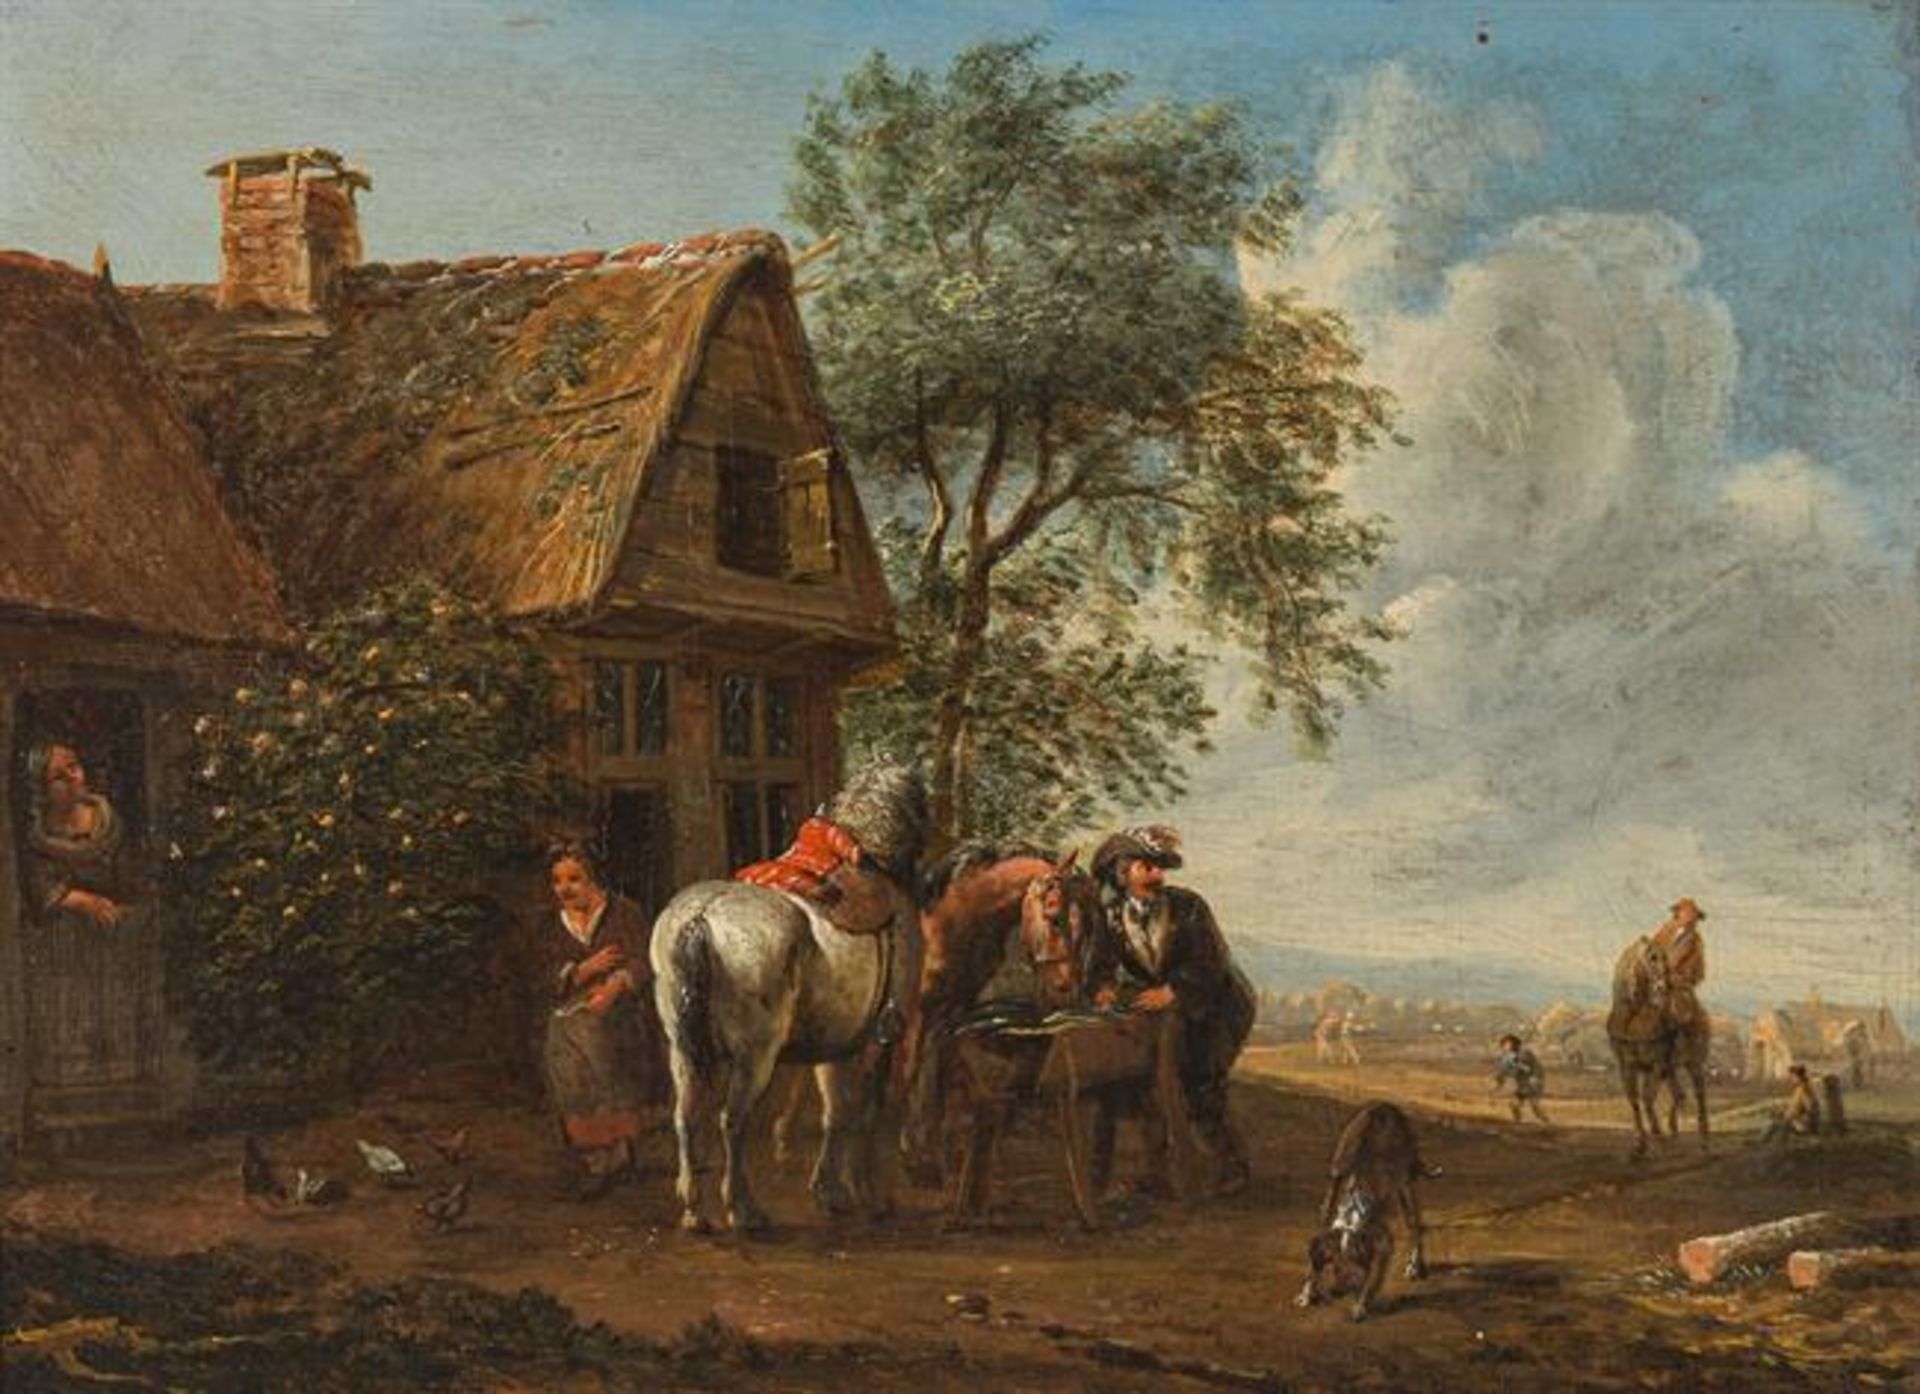 Cornelisz van Essen: Riders in front of a tavern